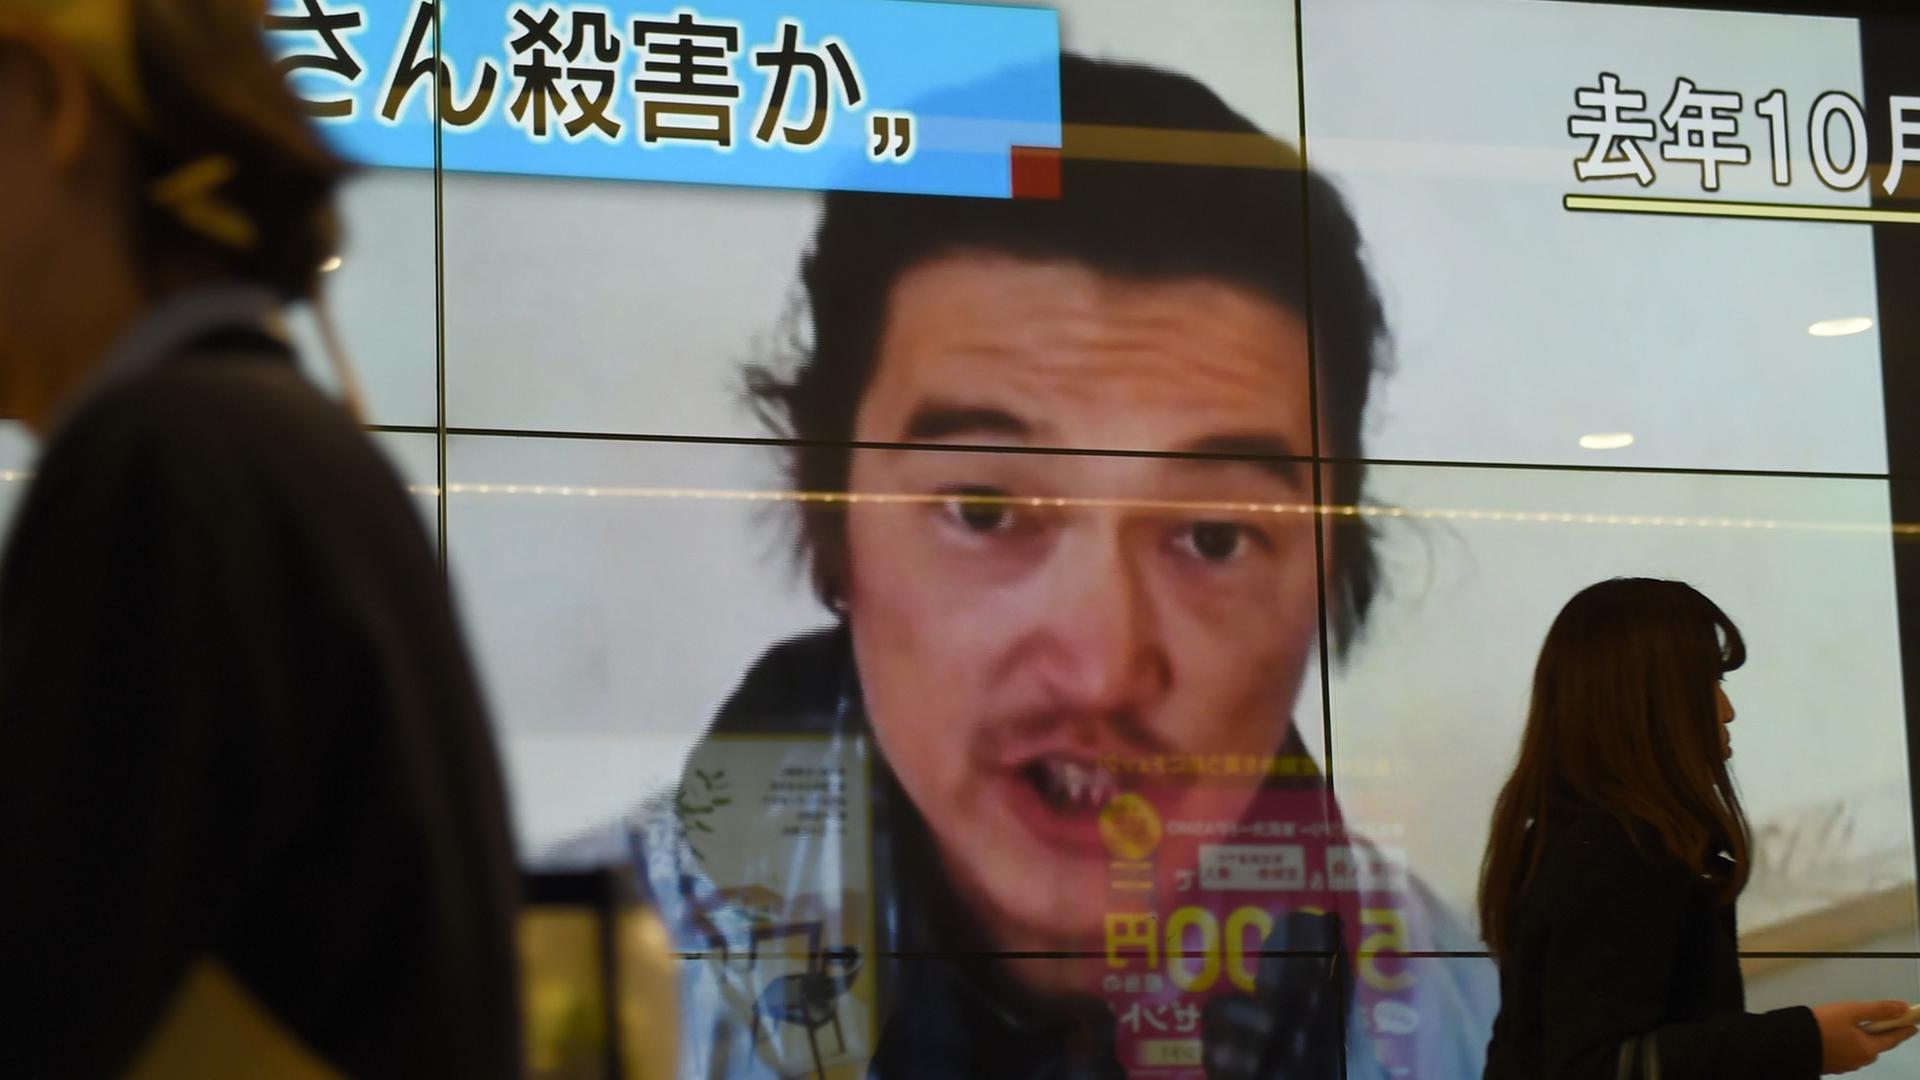 Passanten laufen an einer Leinwand vorbei. Zu sehen ist der Bericht über die Ermordung des japanischen Journalisten Kenji Goto.